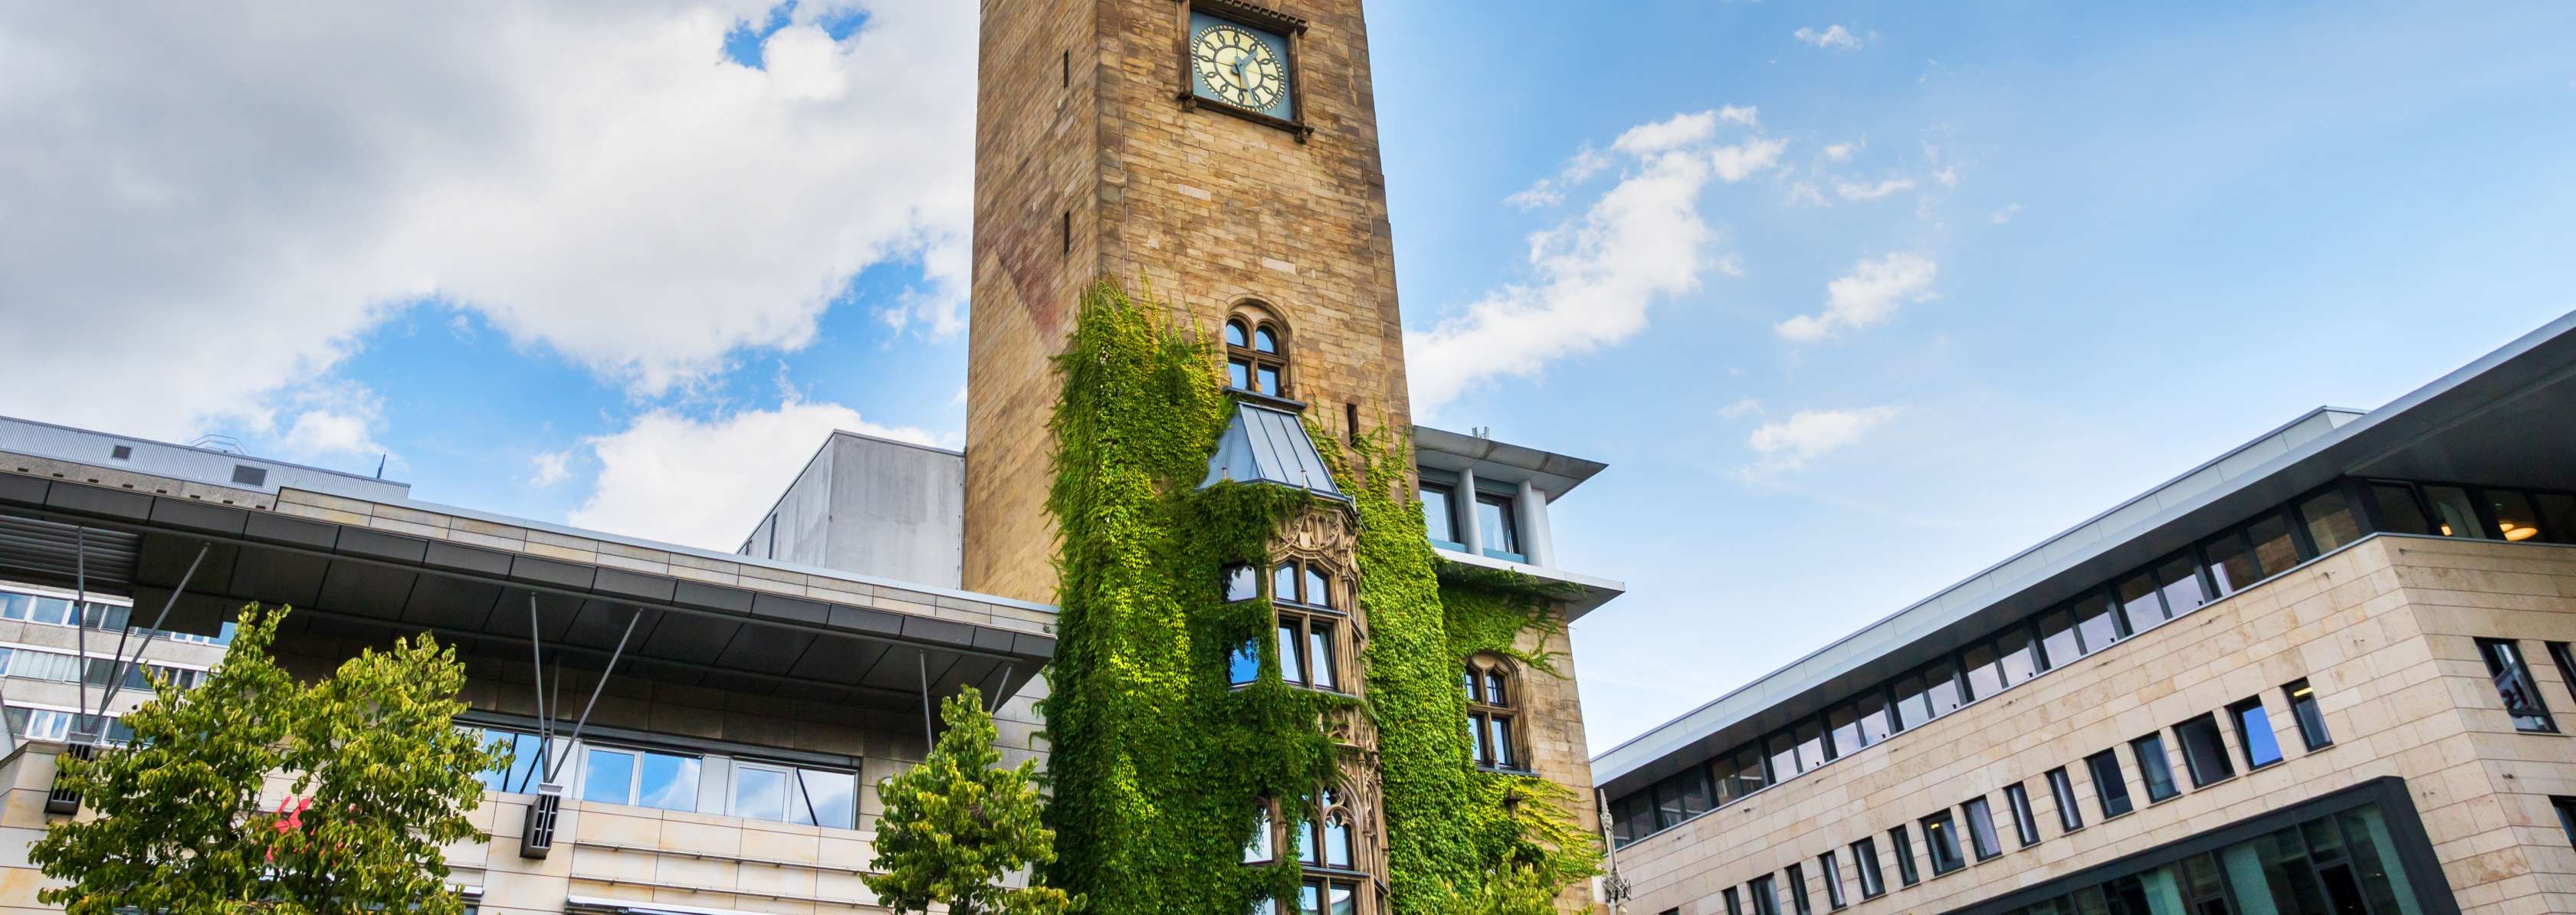 Blick auf den Rathausturm auf dem Friedrich-Ebert-Platz in Hagen